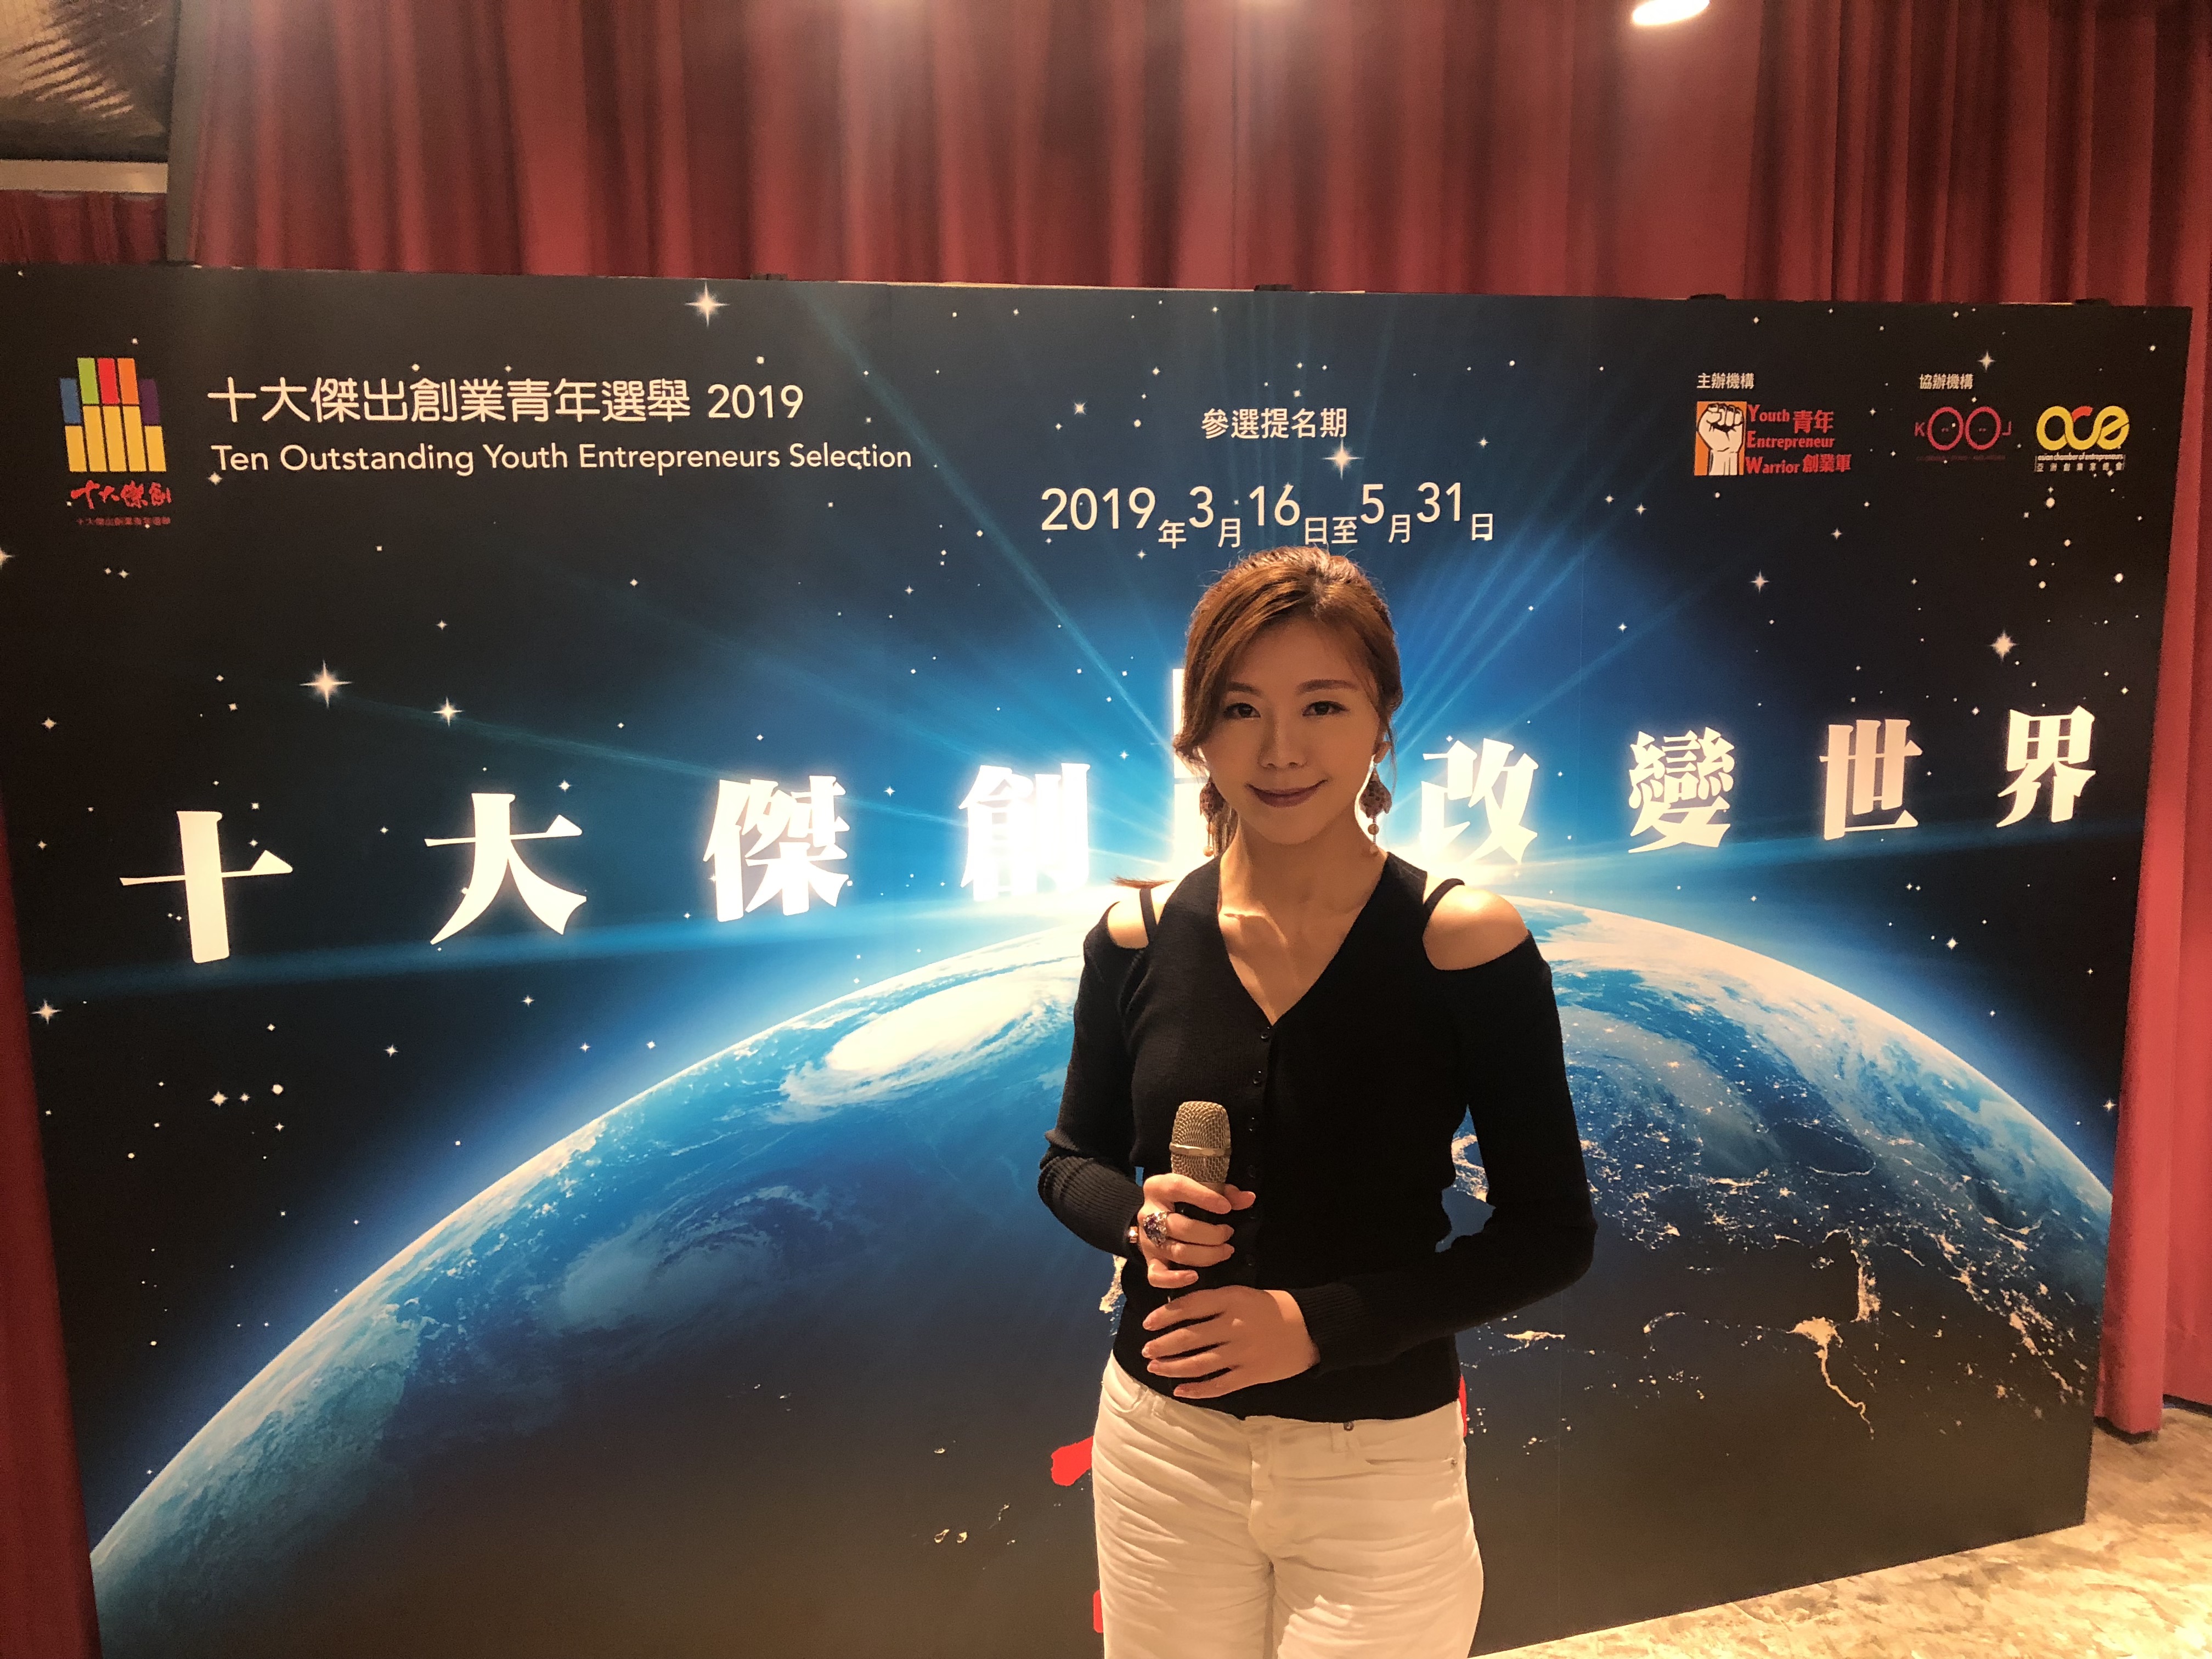 Wendy Tse 謝蕙妍司儀工作紀錄: 香港十大傑出創業青年選舉 